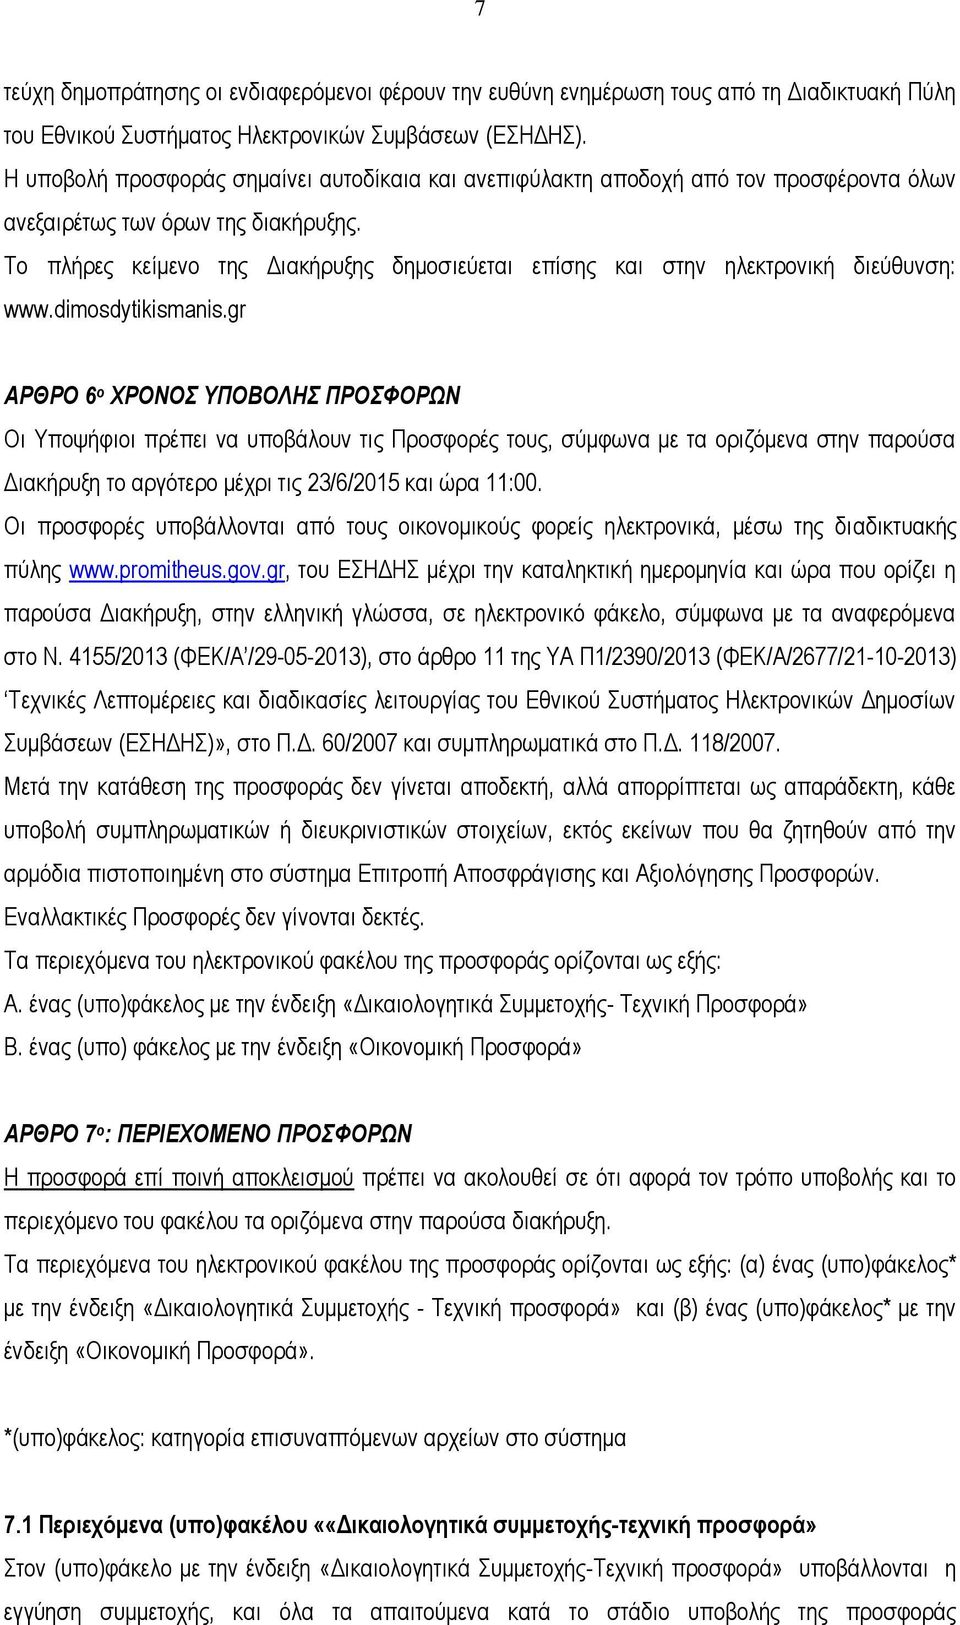 Το πλήρες κείμενο της Διακήρυξης δημοσιεύεται επίσης και στην ηλεκτρονική διεύθυνση: www.dimosdytikismanis.